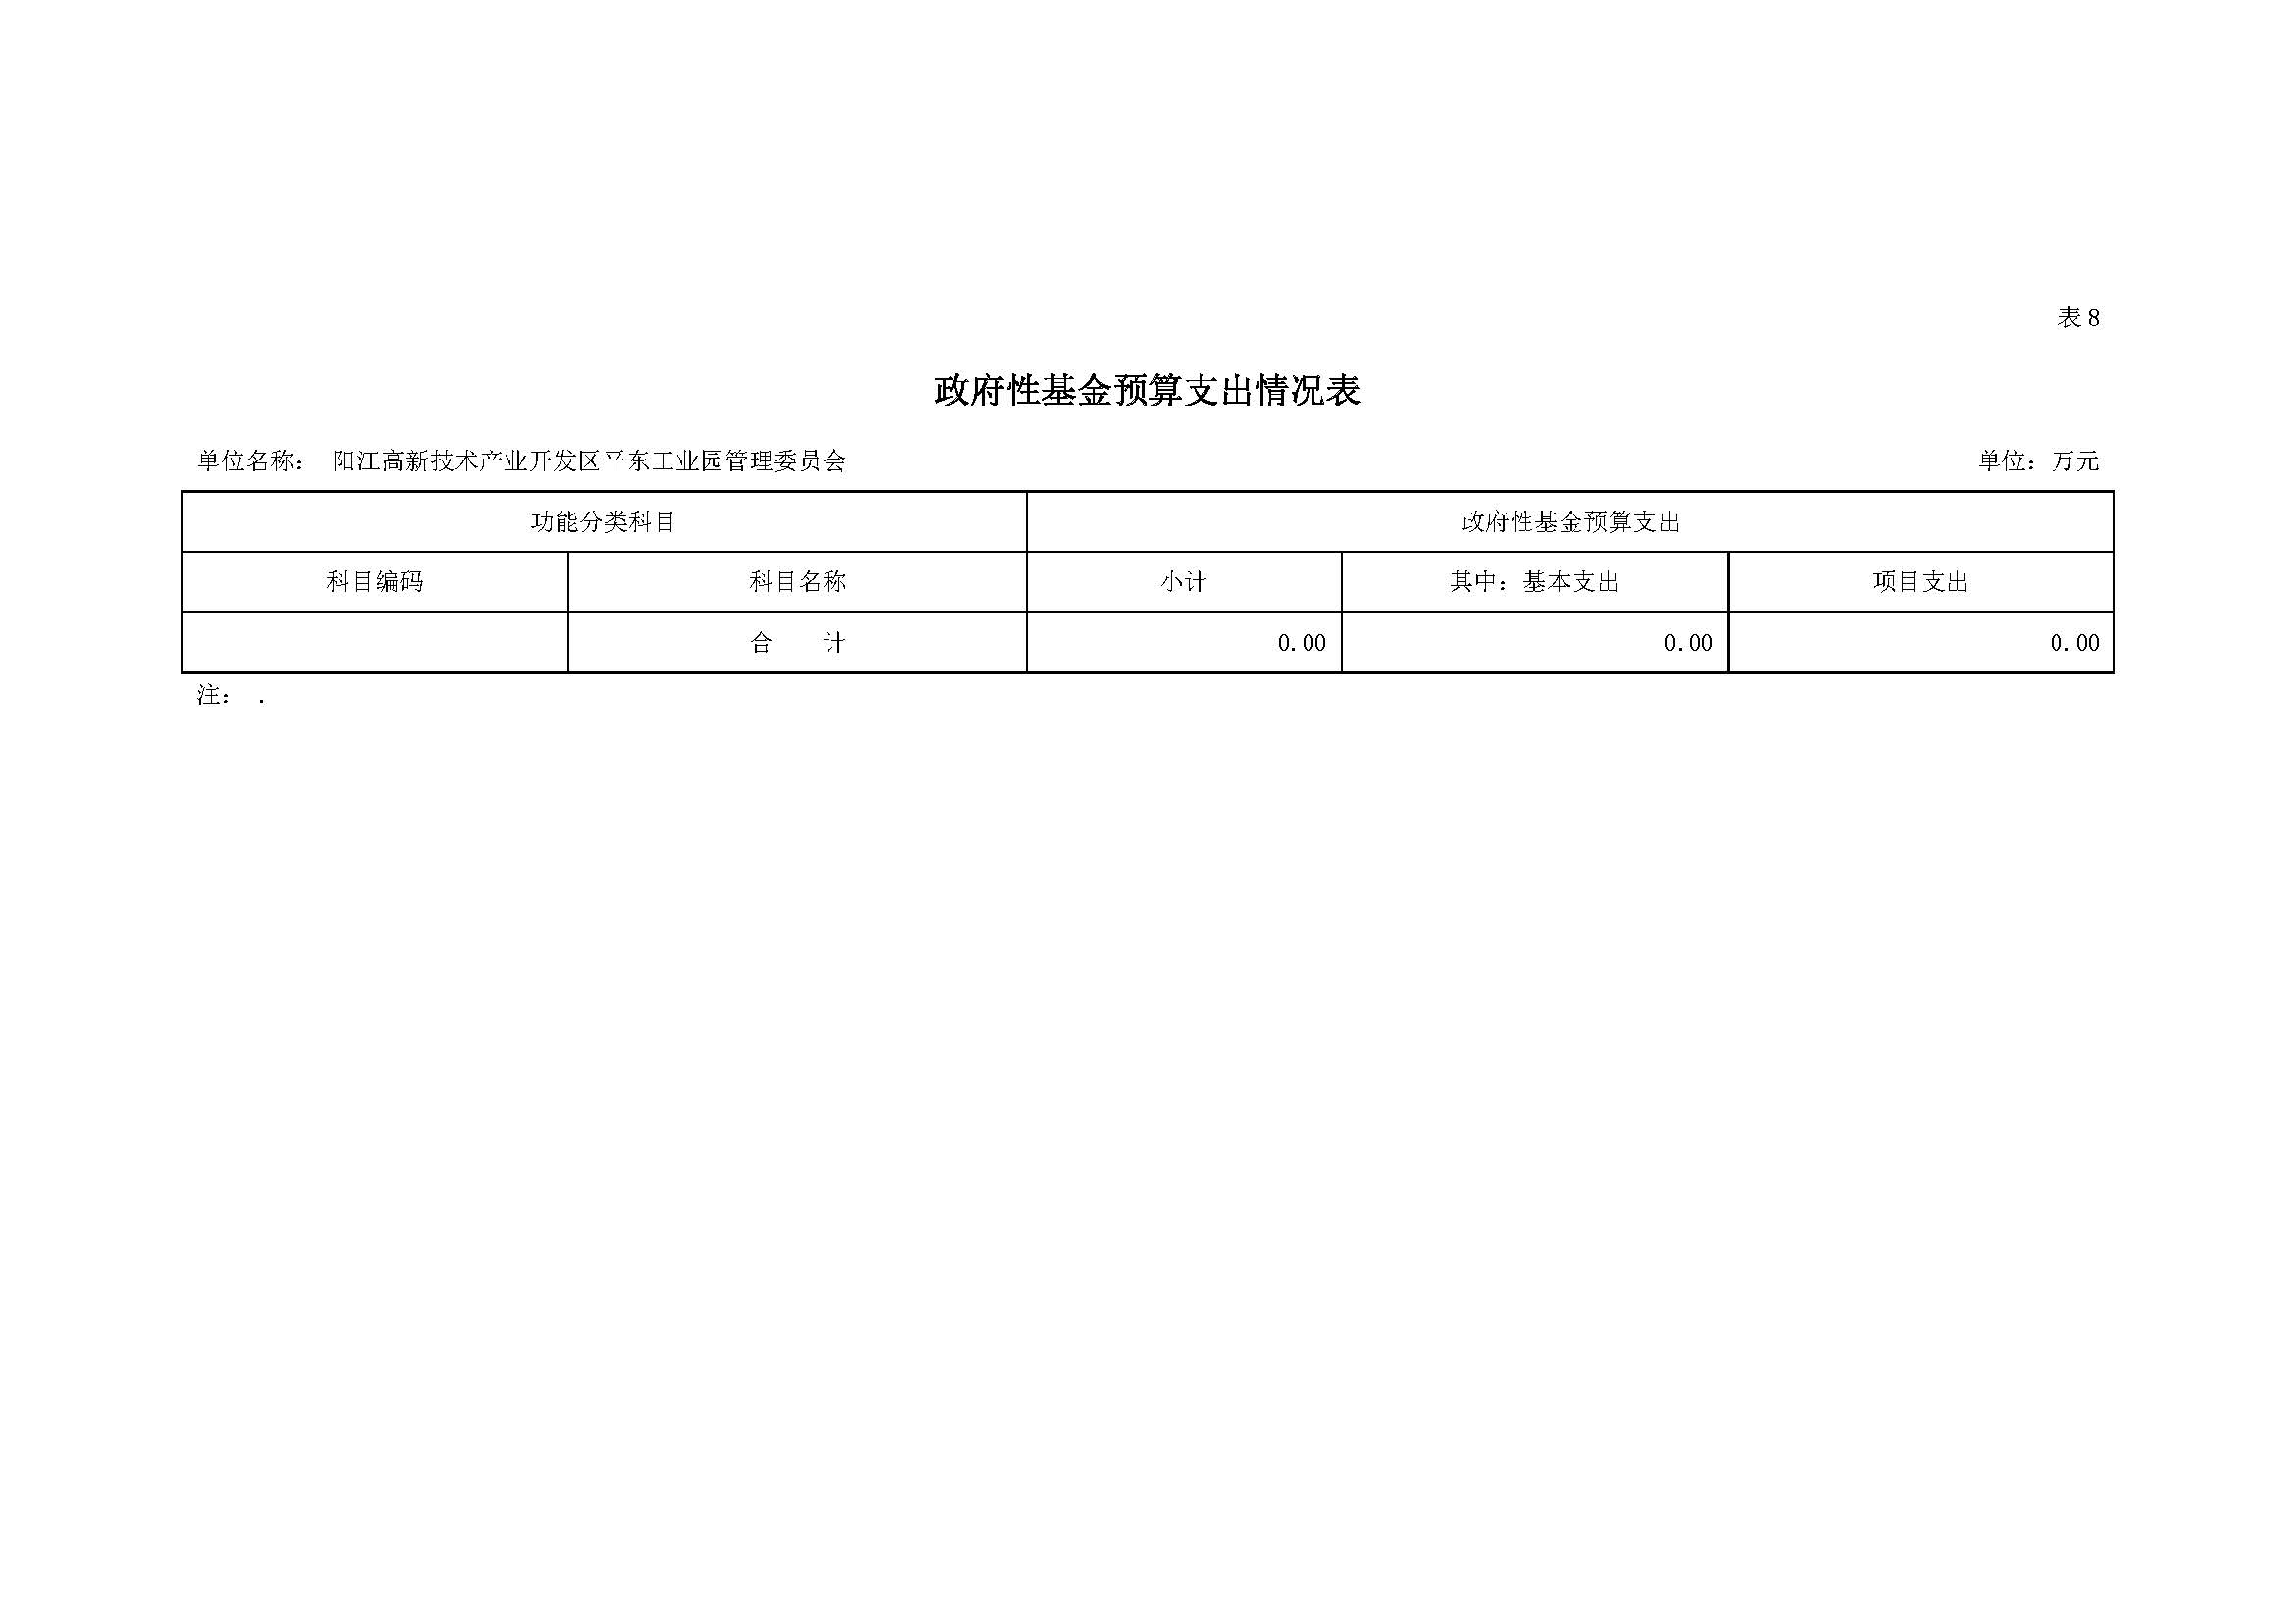 2021 年阳江高新技术产业开发区管理委员会平东工业园部门预算_页面_16.jpg